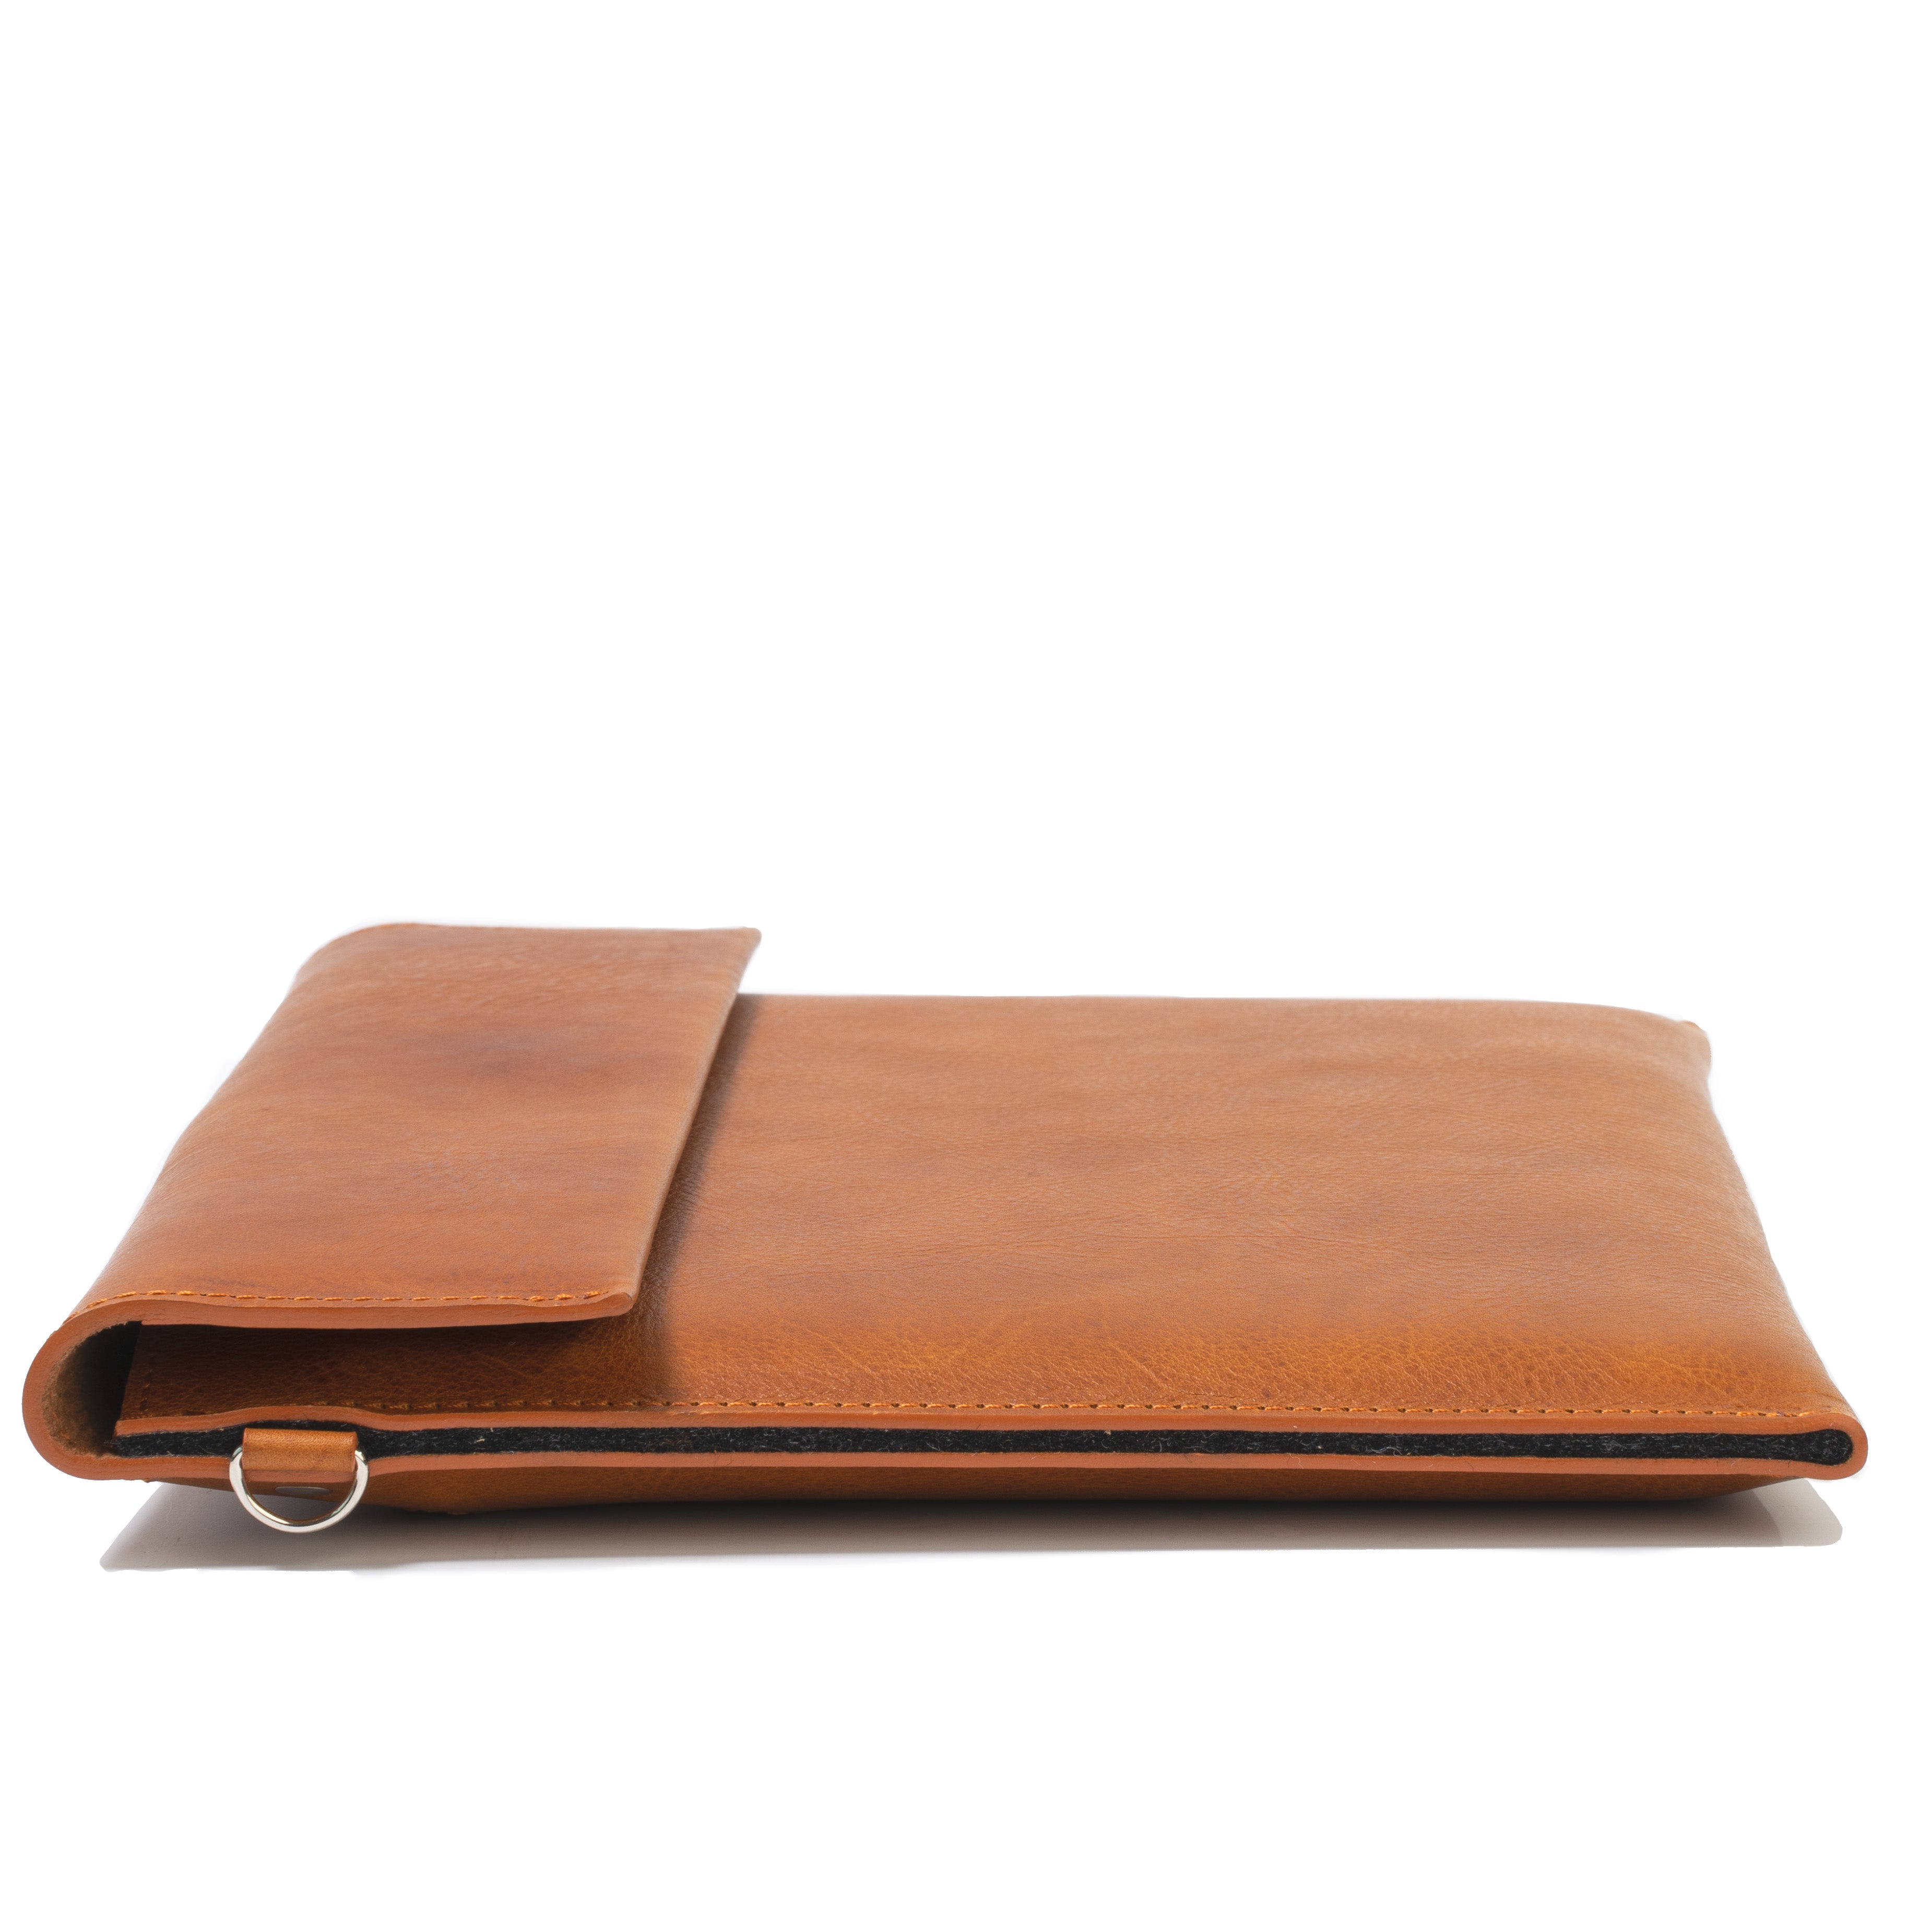 Draftsman 7 iPad Sleeve Cover · Dark Brown by Capra Leather